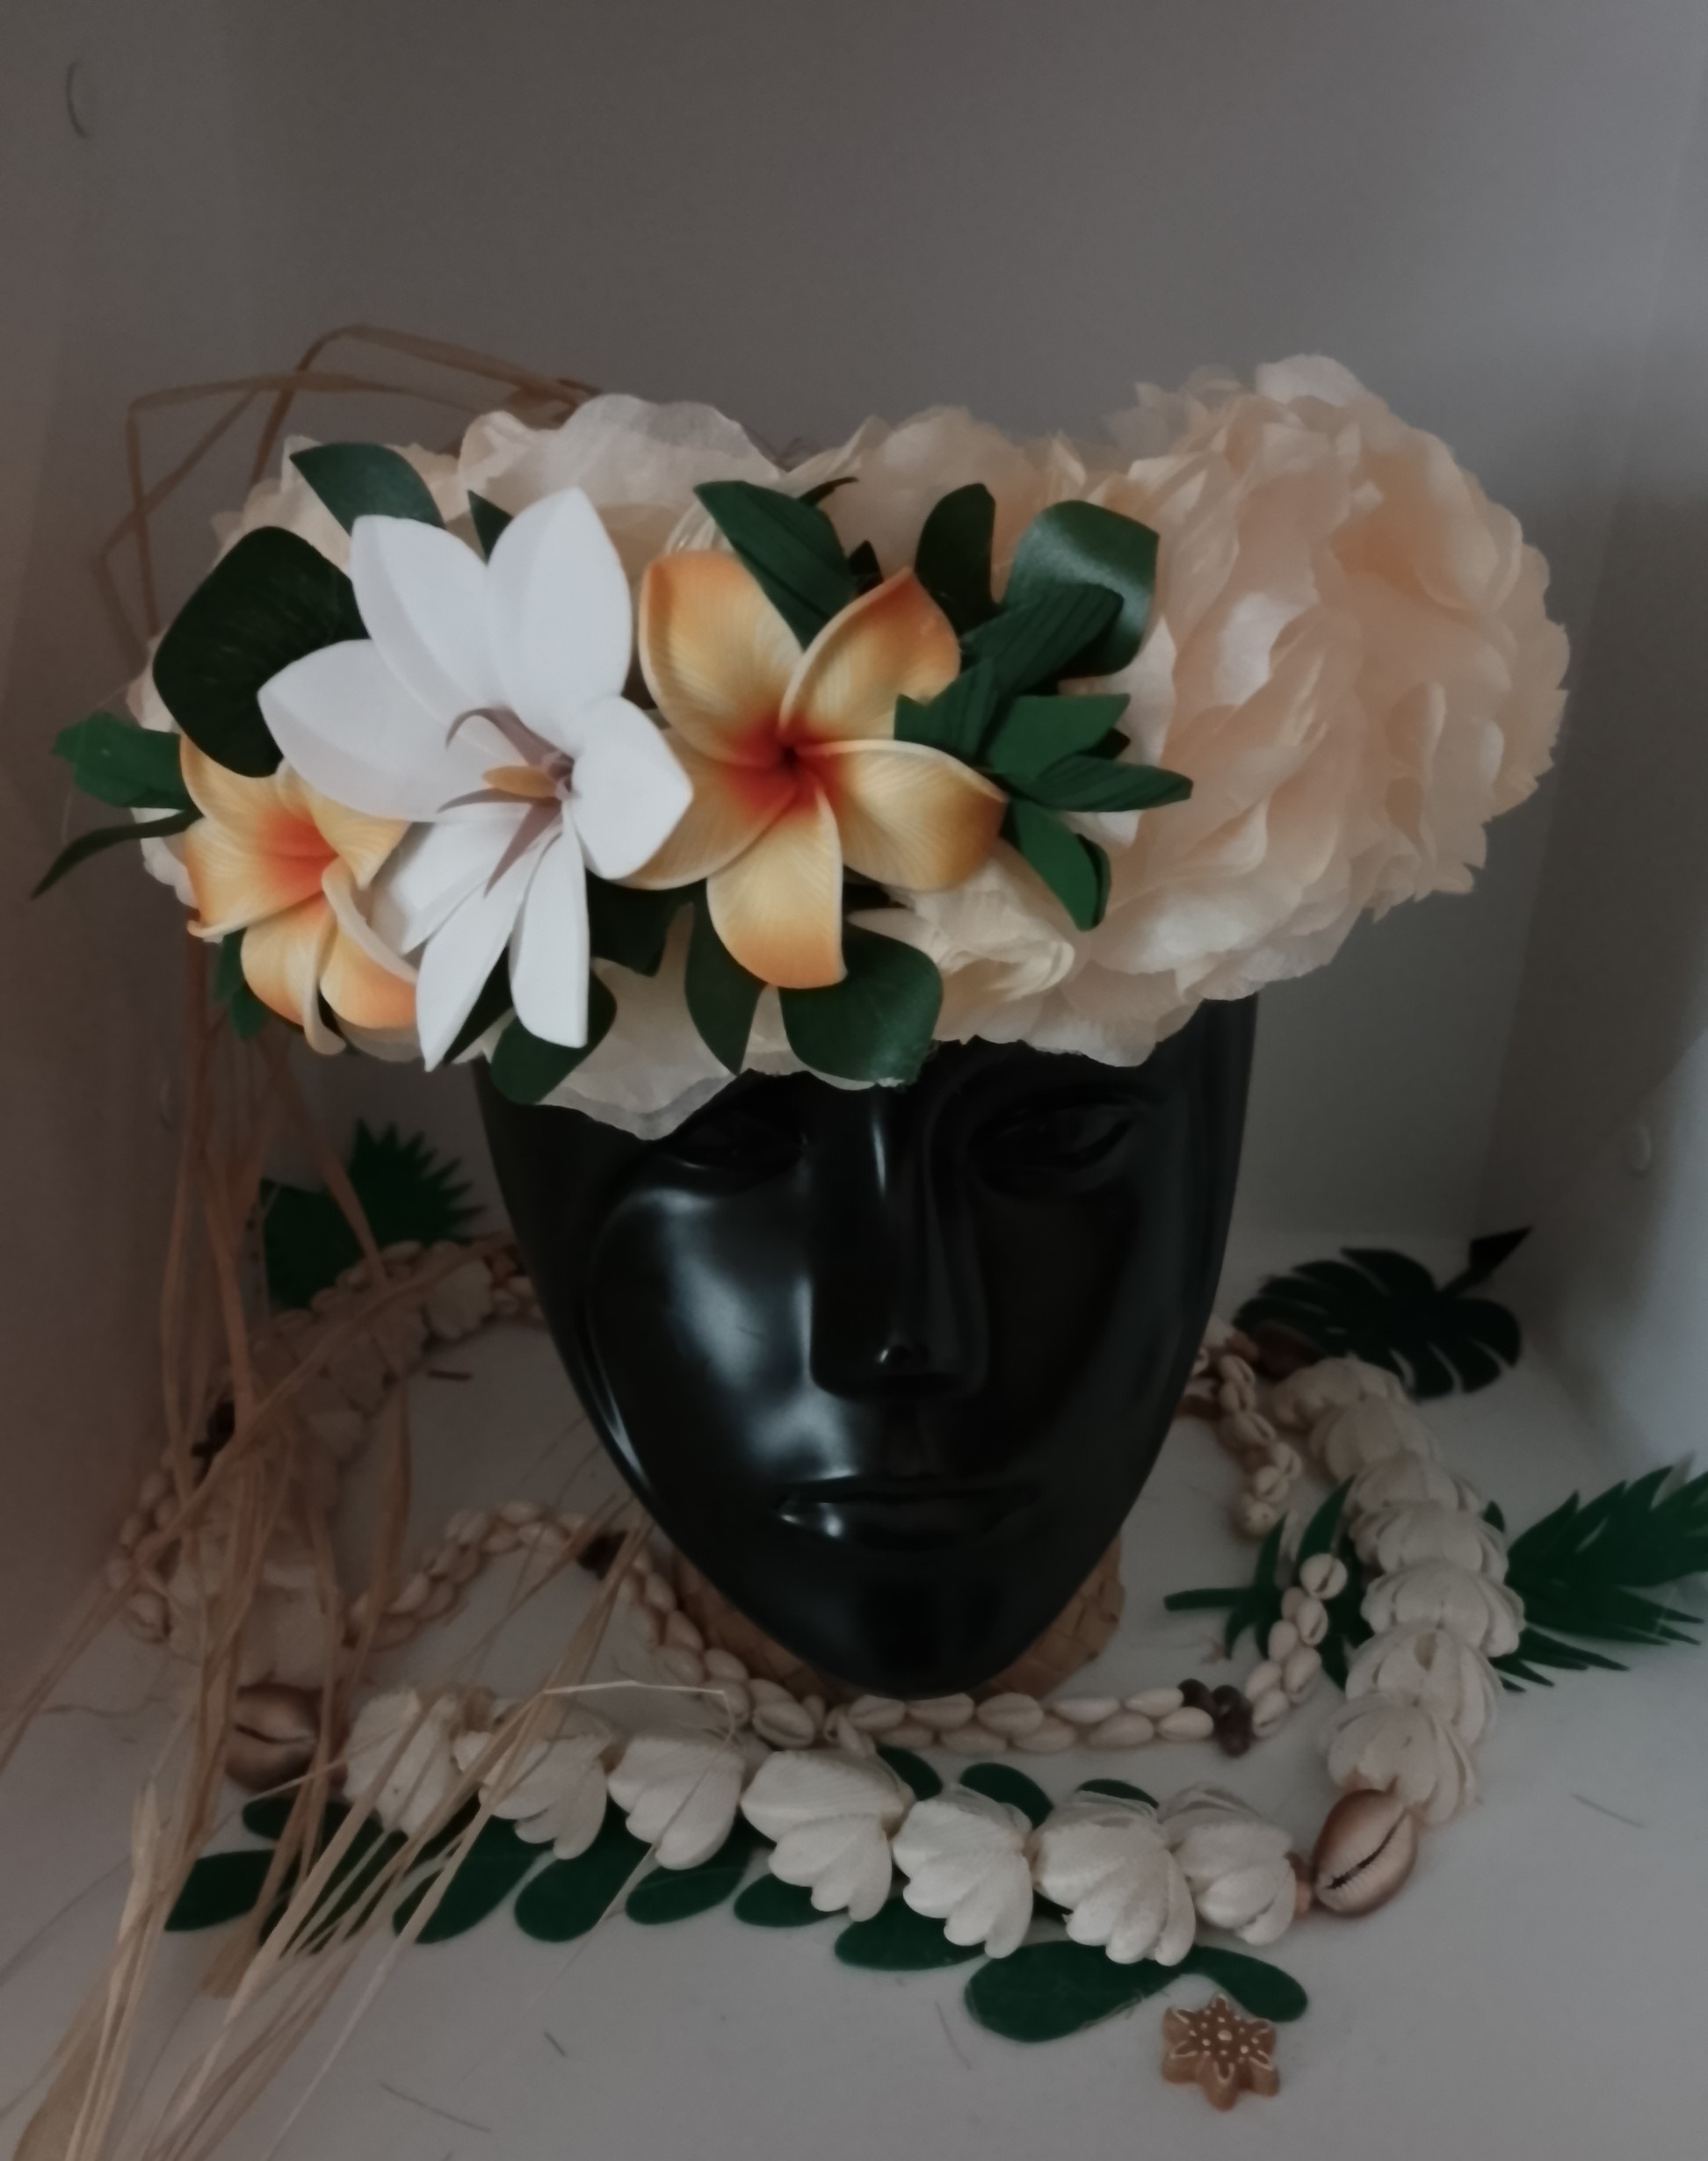 couronne florale de tête champagne avec grande tiare tahiti et deux tipaniers orangés dans leurs feuillages by Vaite.e.Tiare créations